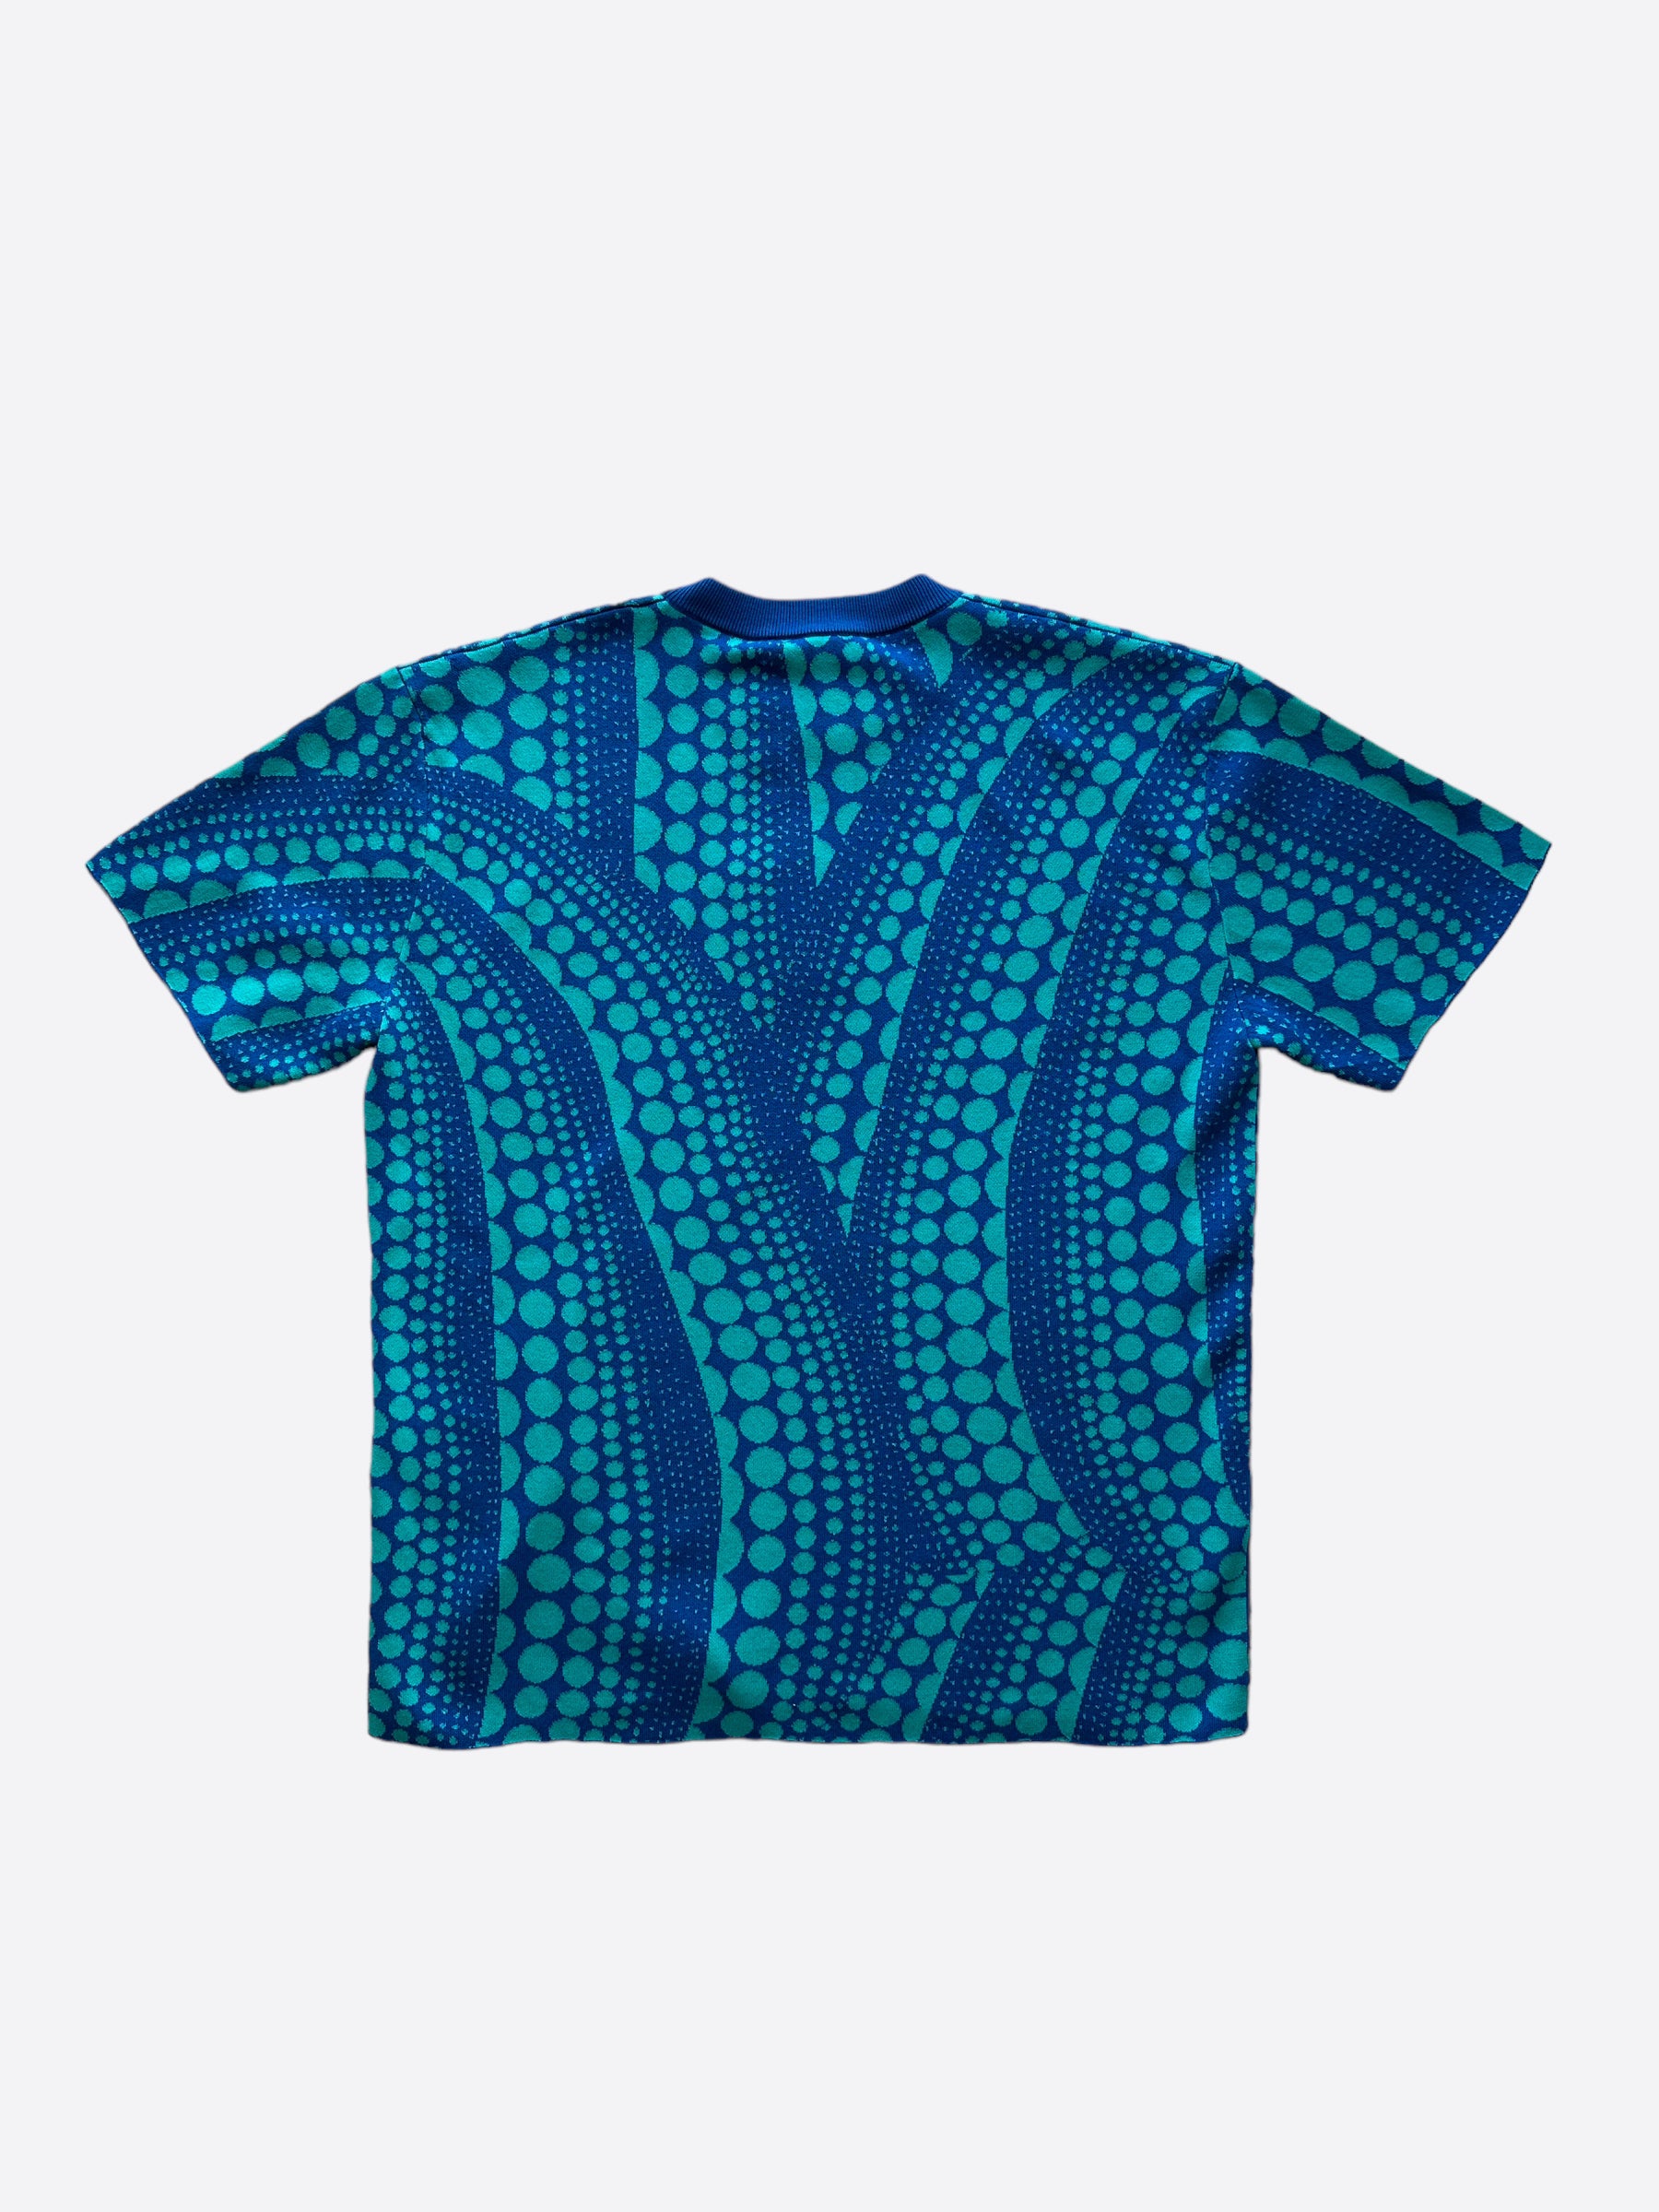 Louis Vuitton Yayoi Kusama Blue Dotted Pattern T-Shirt